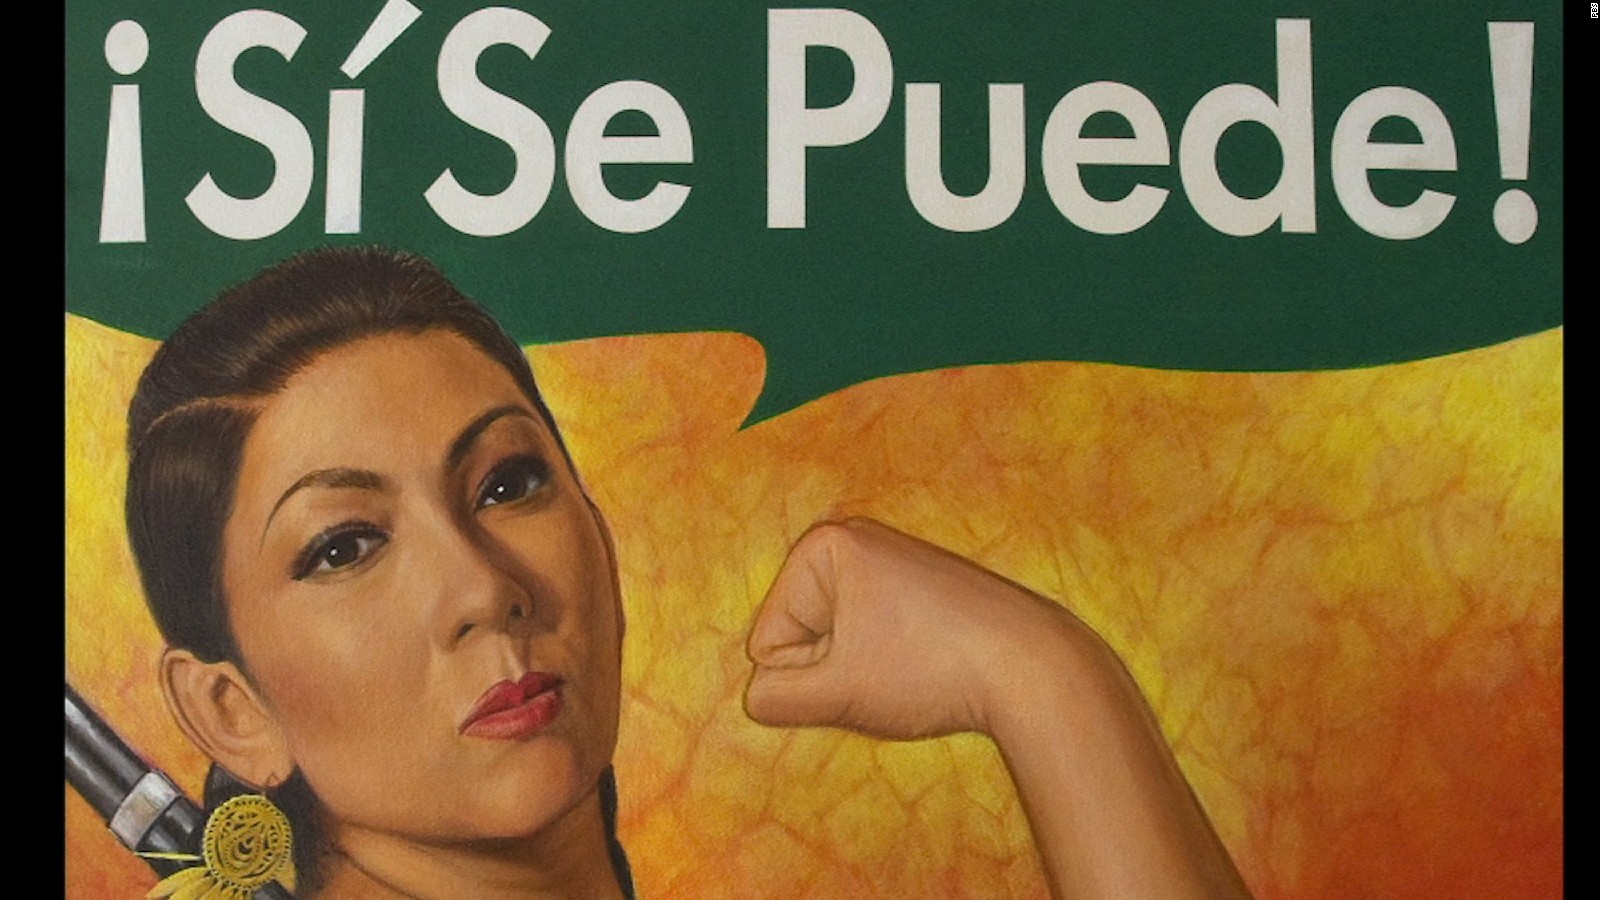 Foresee Hindre skør Sí se puede!, la vida y activismo de Dolores Huerta - CNN Video